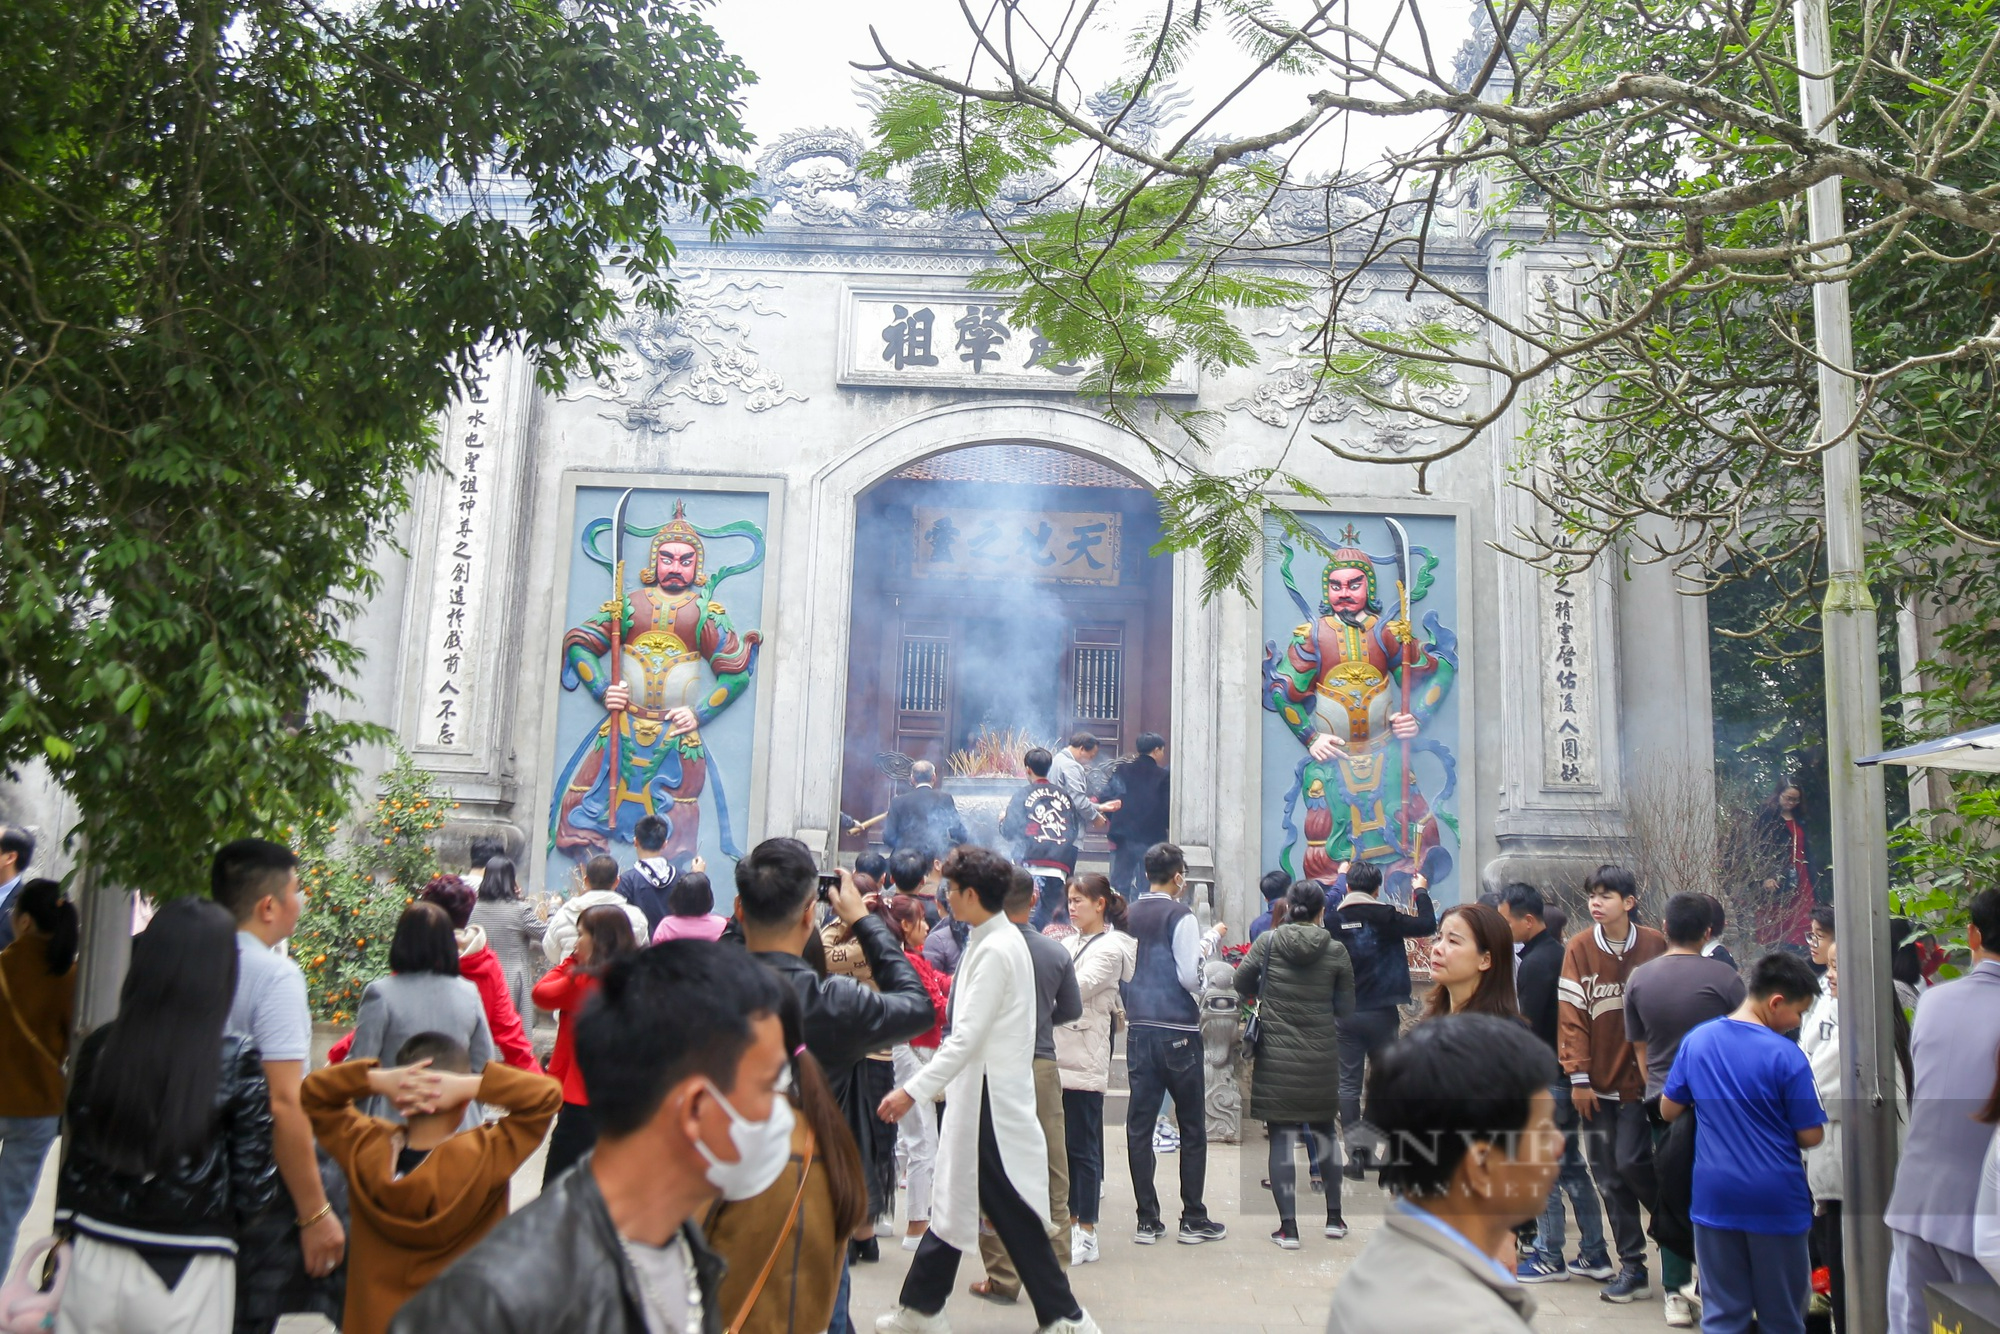 
Hàng vạn người dân thập phương đi lễ đền Hùng cầu may ngày đầu xuân - Ảnh 10.